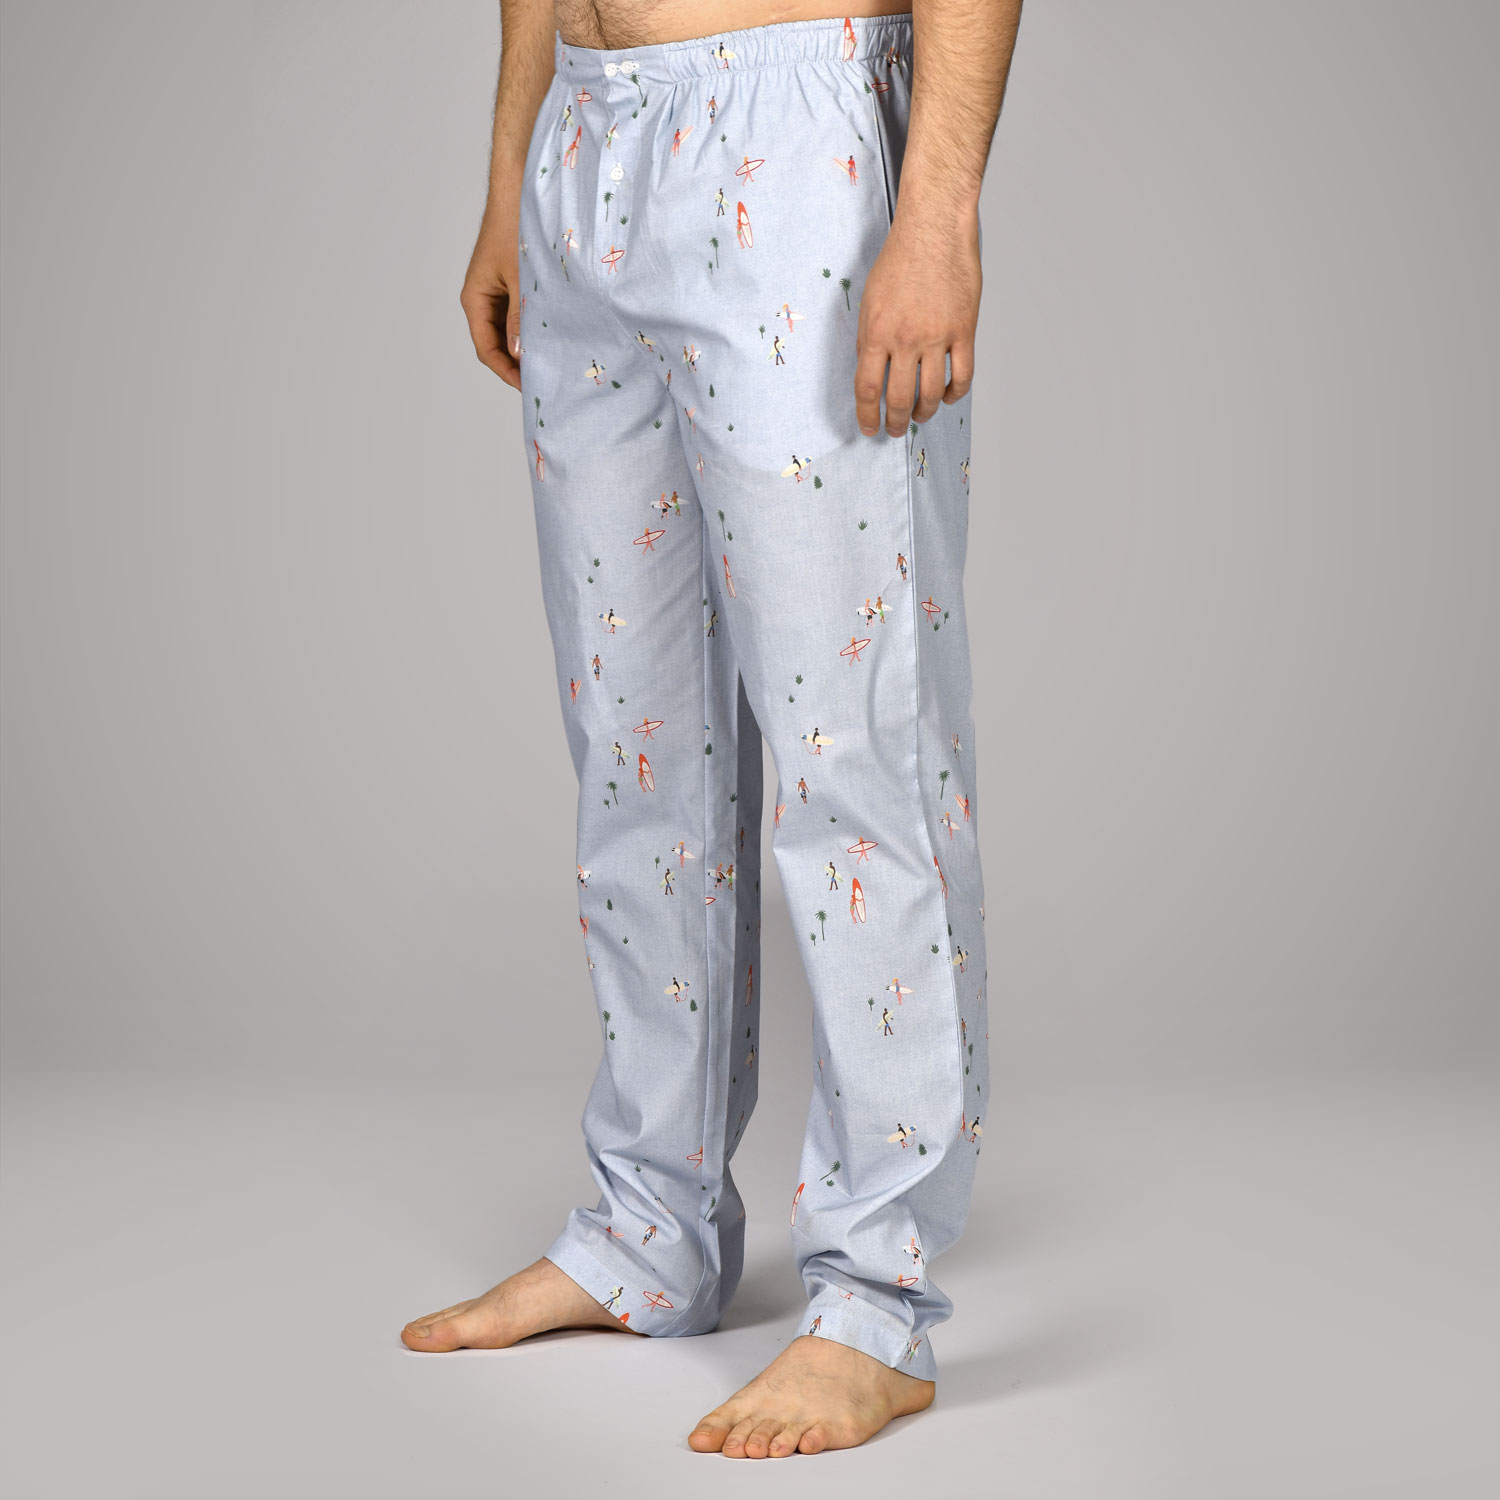 Pantalon d'interieur, bas de pyjama homme en satin de coton , coloris Toucan